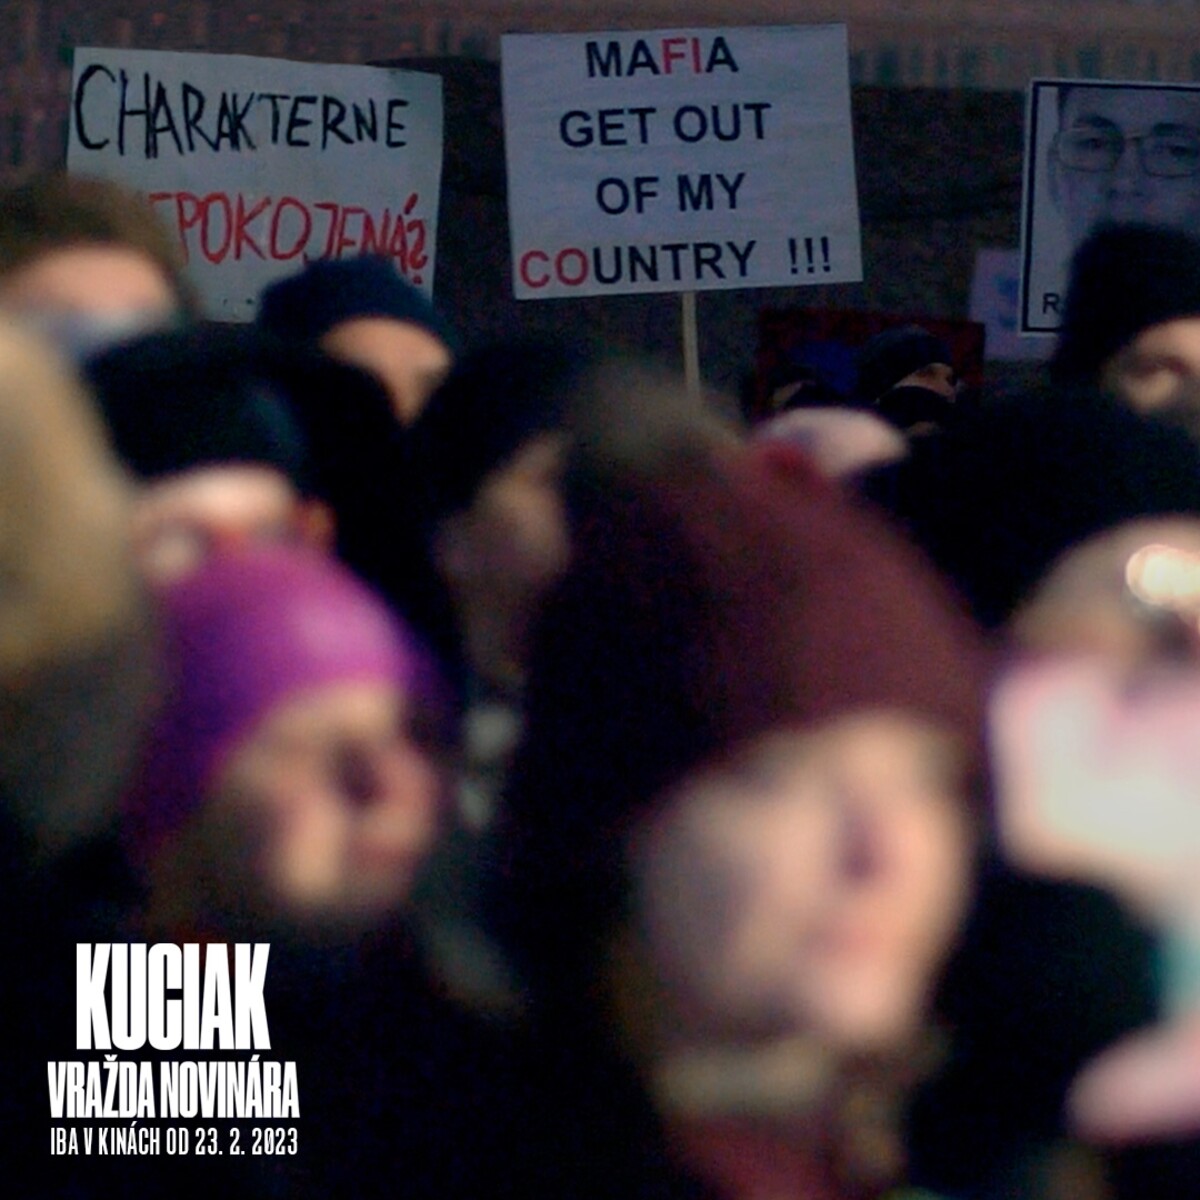 Kuciak: Vražda novinára